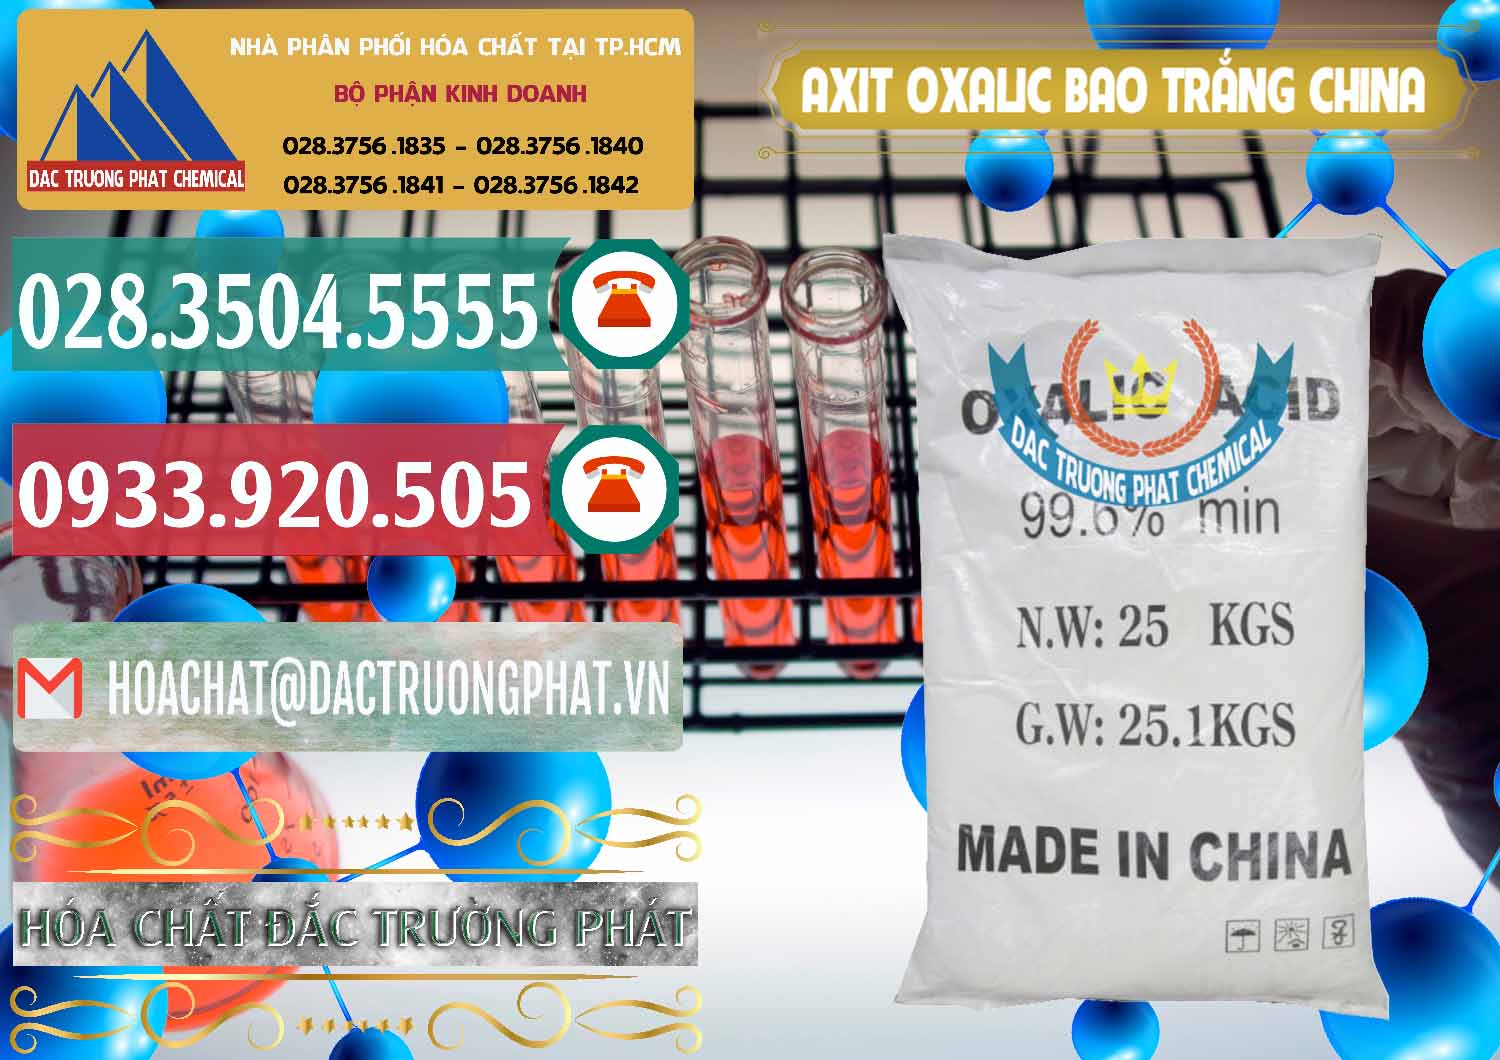 Bán và cung ứng Acid Oxalic – Axit Oxalic 99.6% Bao Trắng Trung Quốc China - 0270 - Chuyên bán và cung cấp hóa chất tại TP.HCM - muabanhoachat.vn